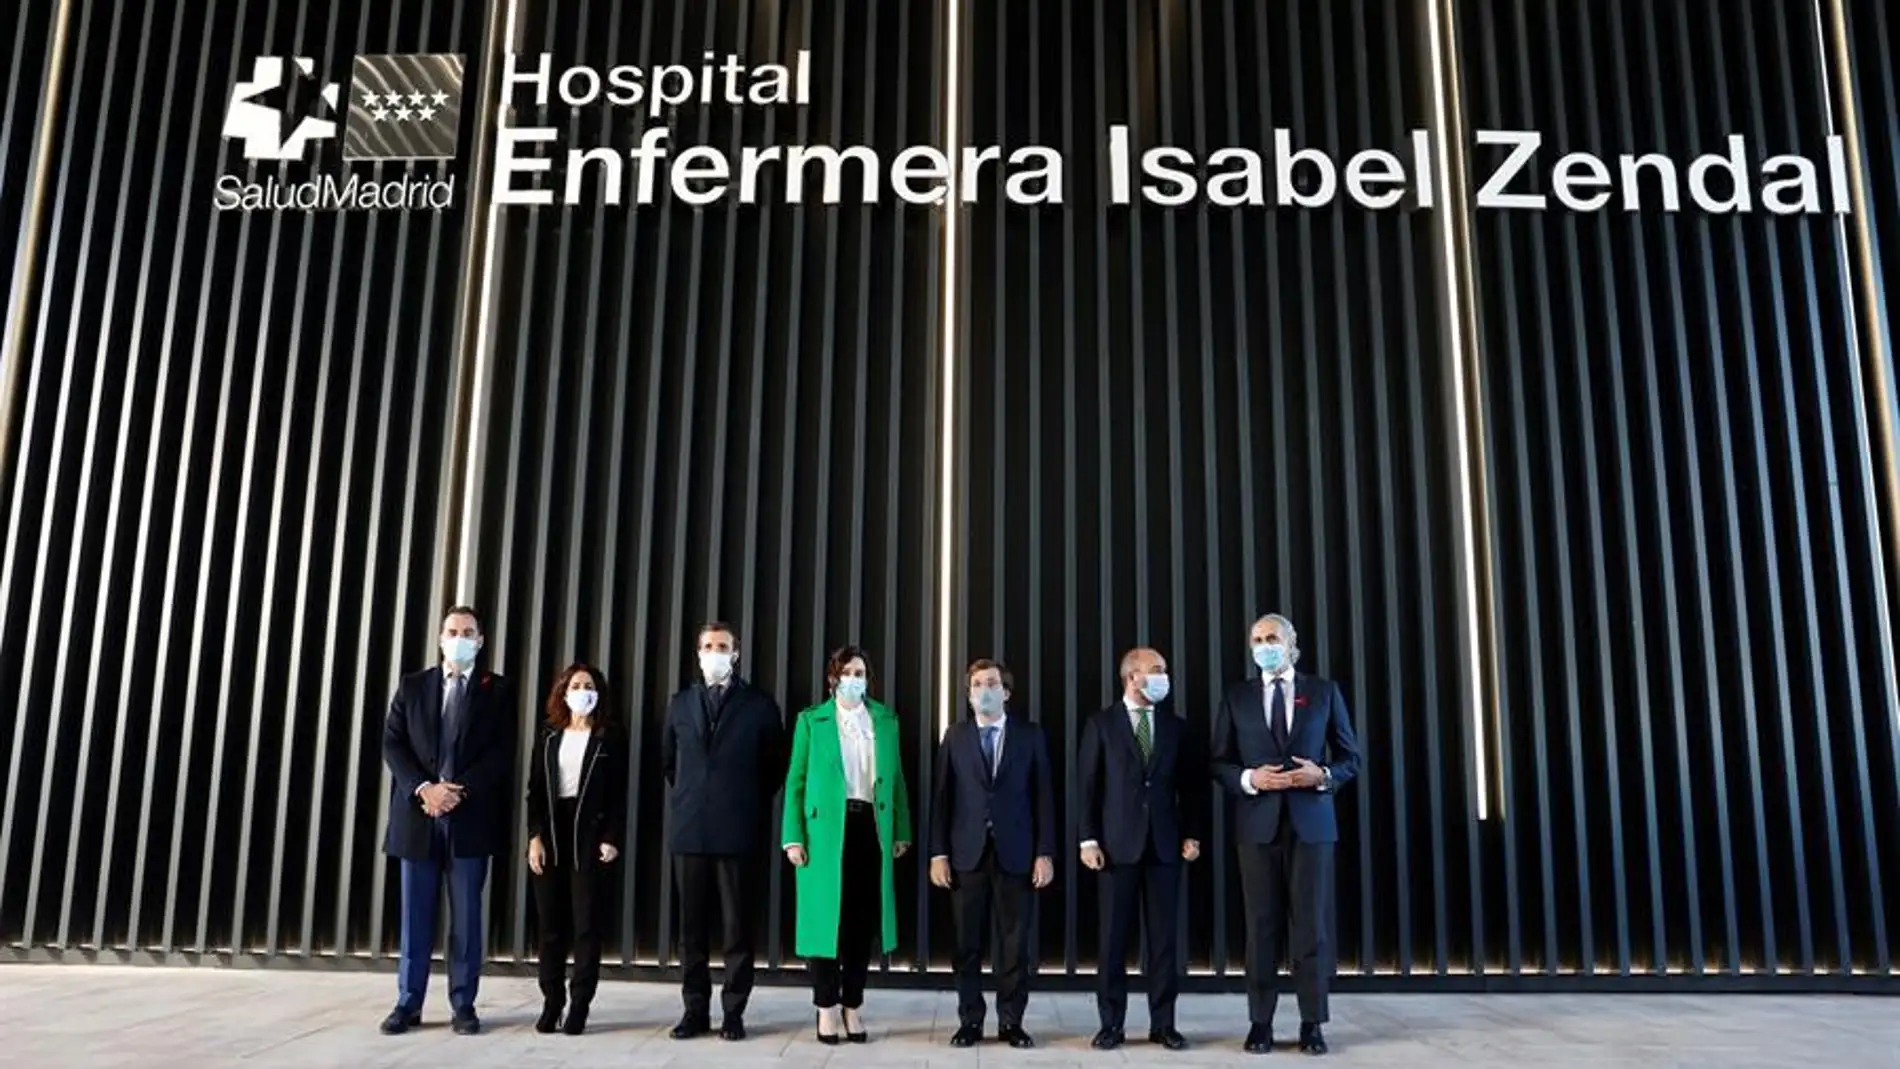 Ayuso, Casado o Martínez-Almeida, en la inauguración del hospital Enfermera Isabel Zendal.